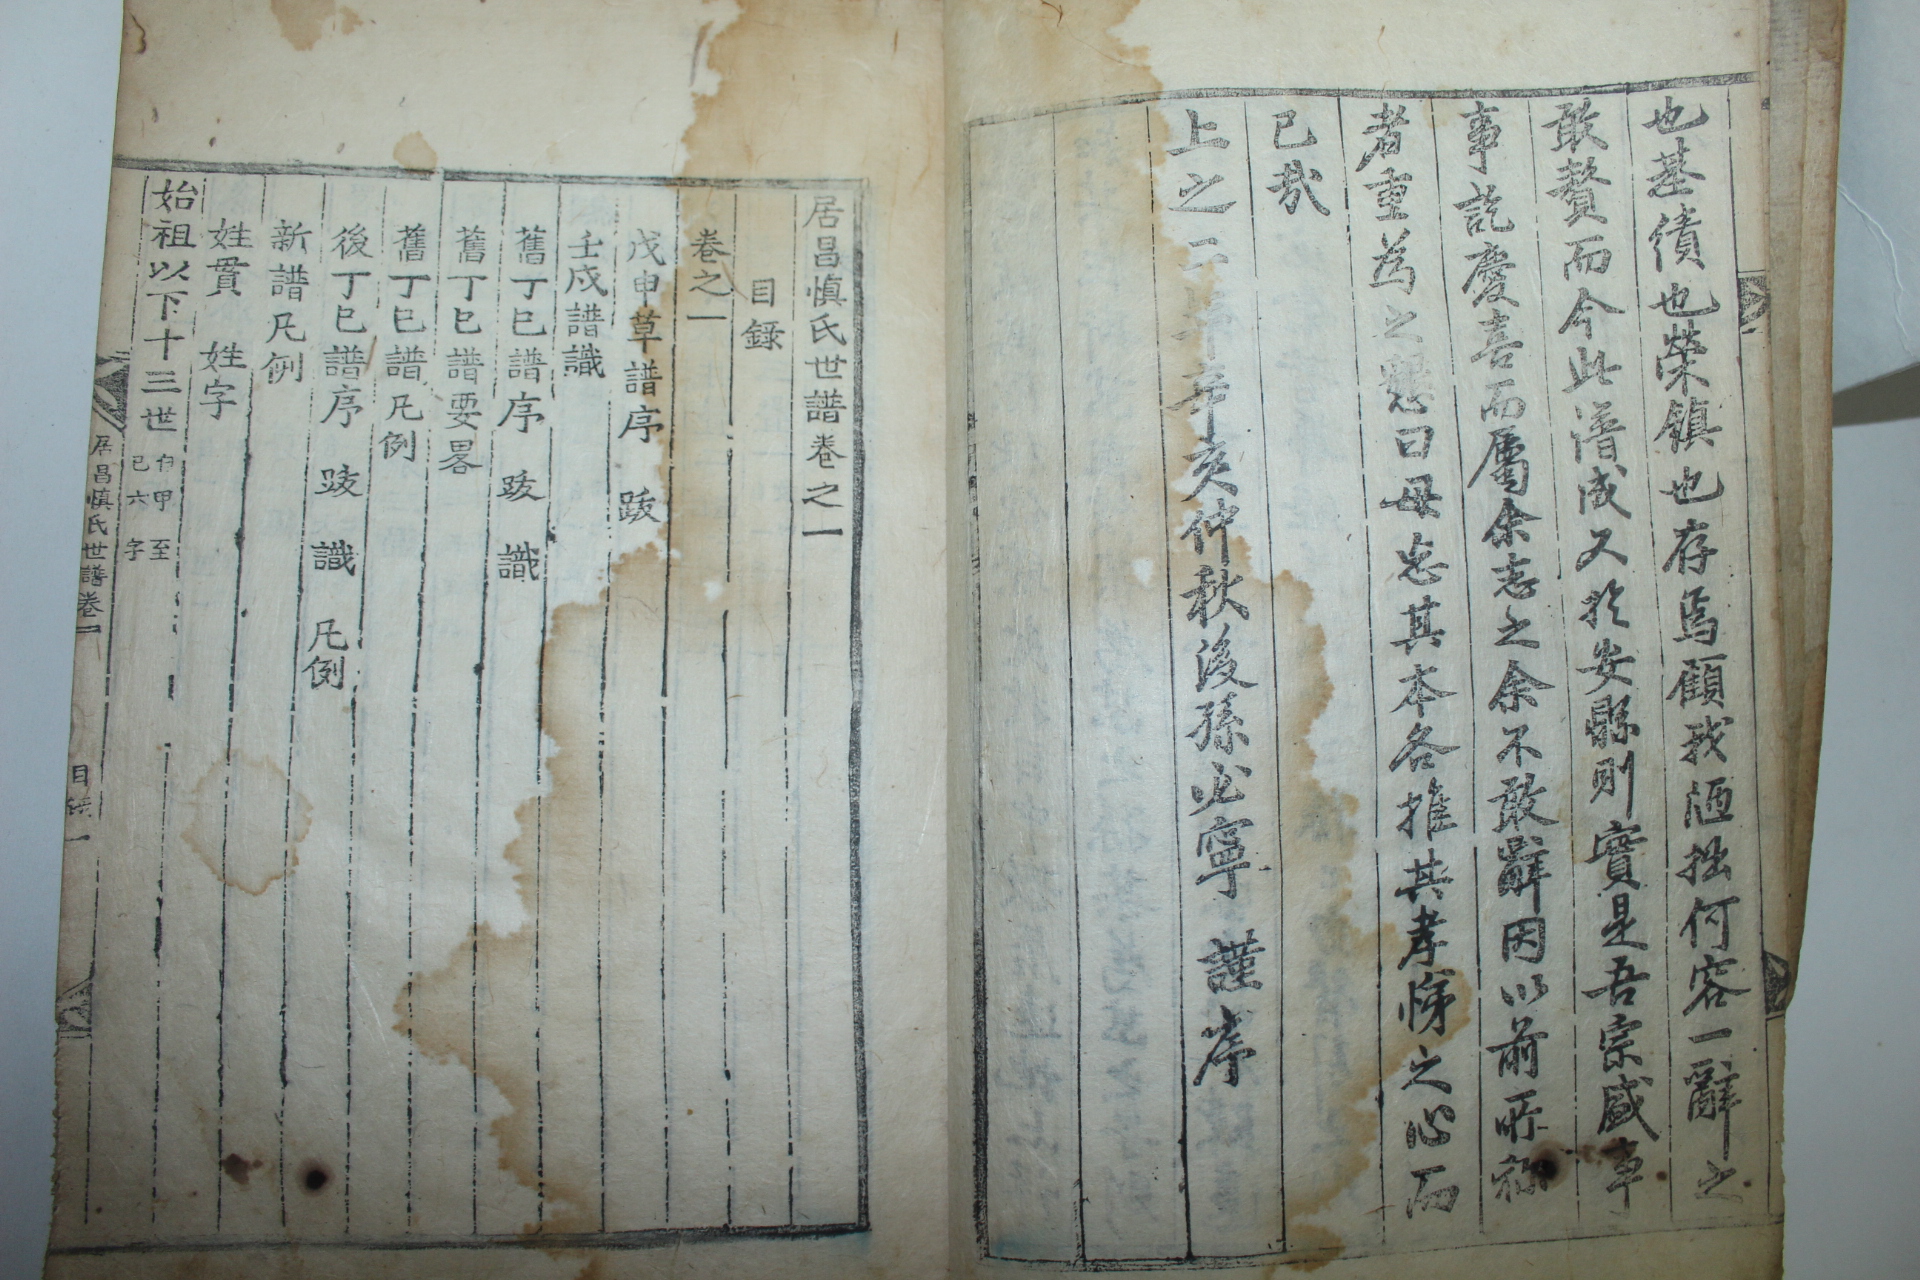 1851년 목판본 거창신씨세보(居昌慎氏世譜) 12책